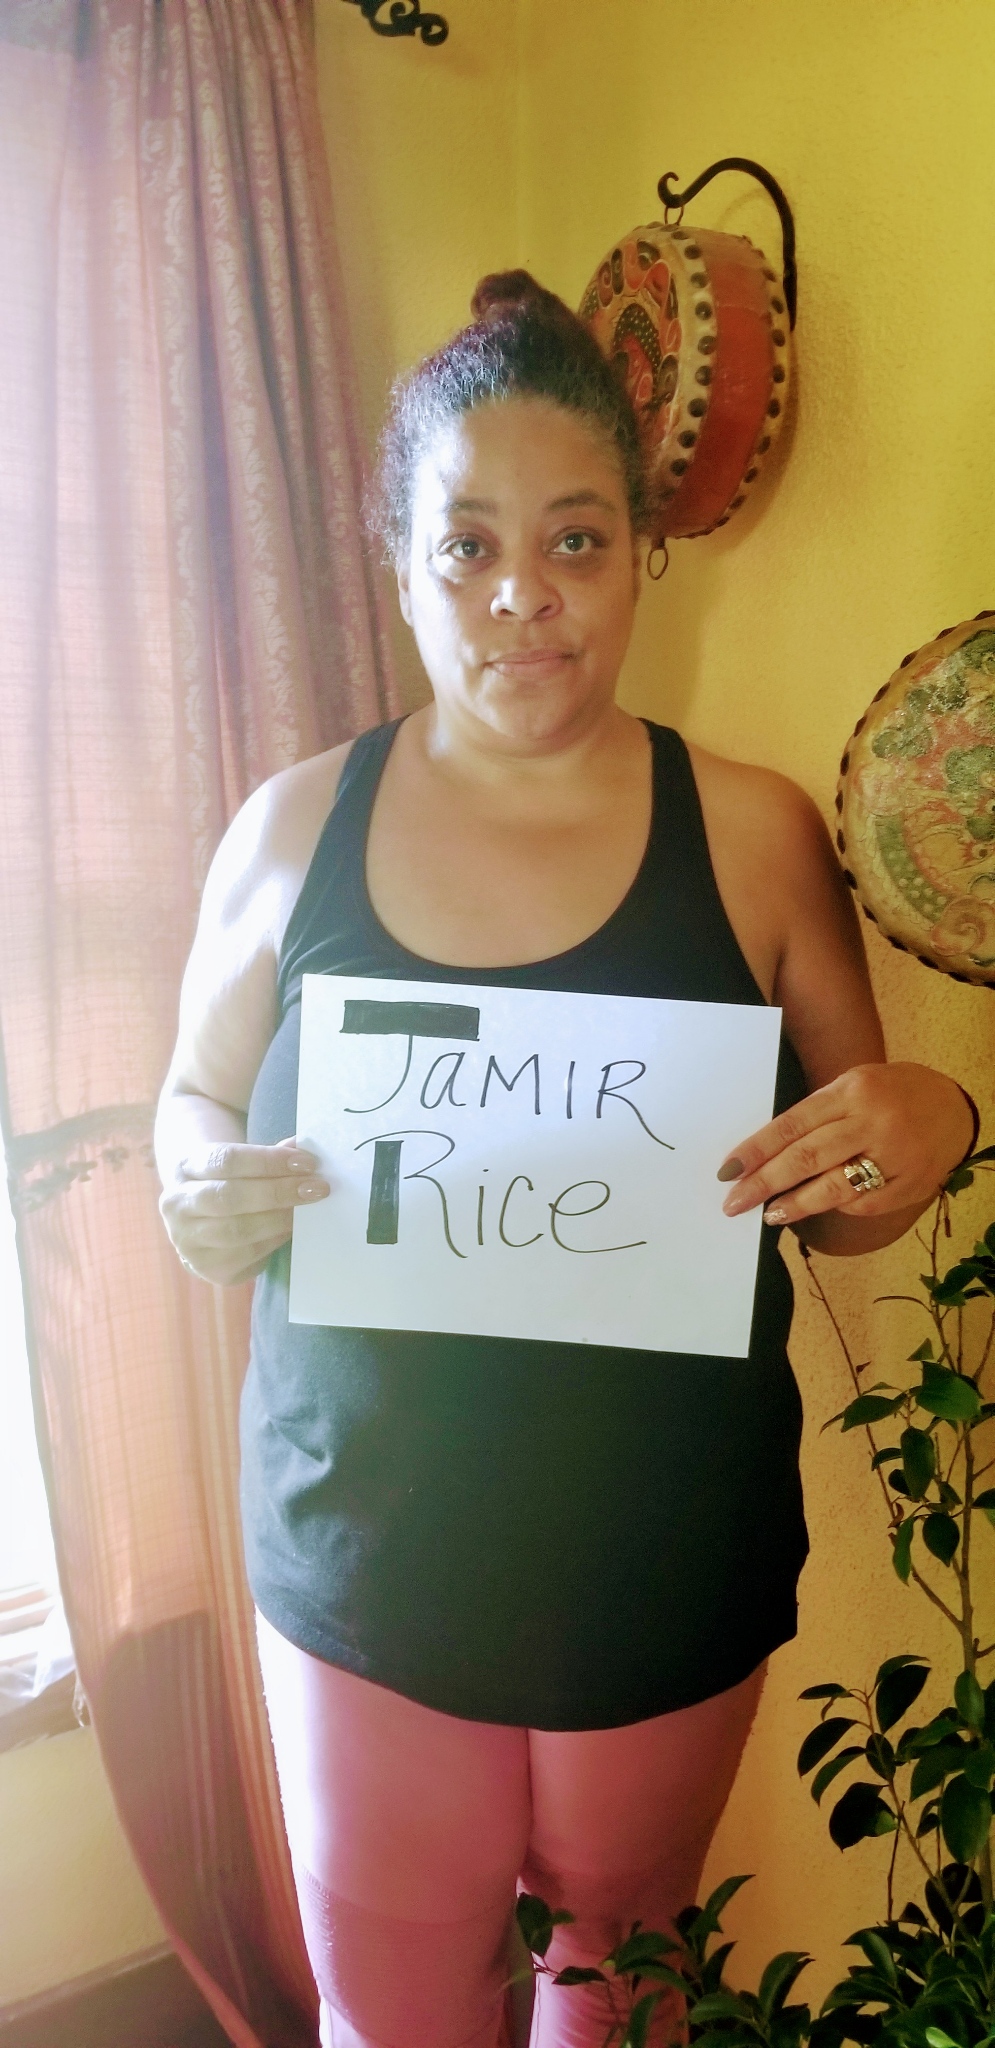 Jamir Rice